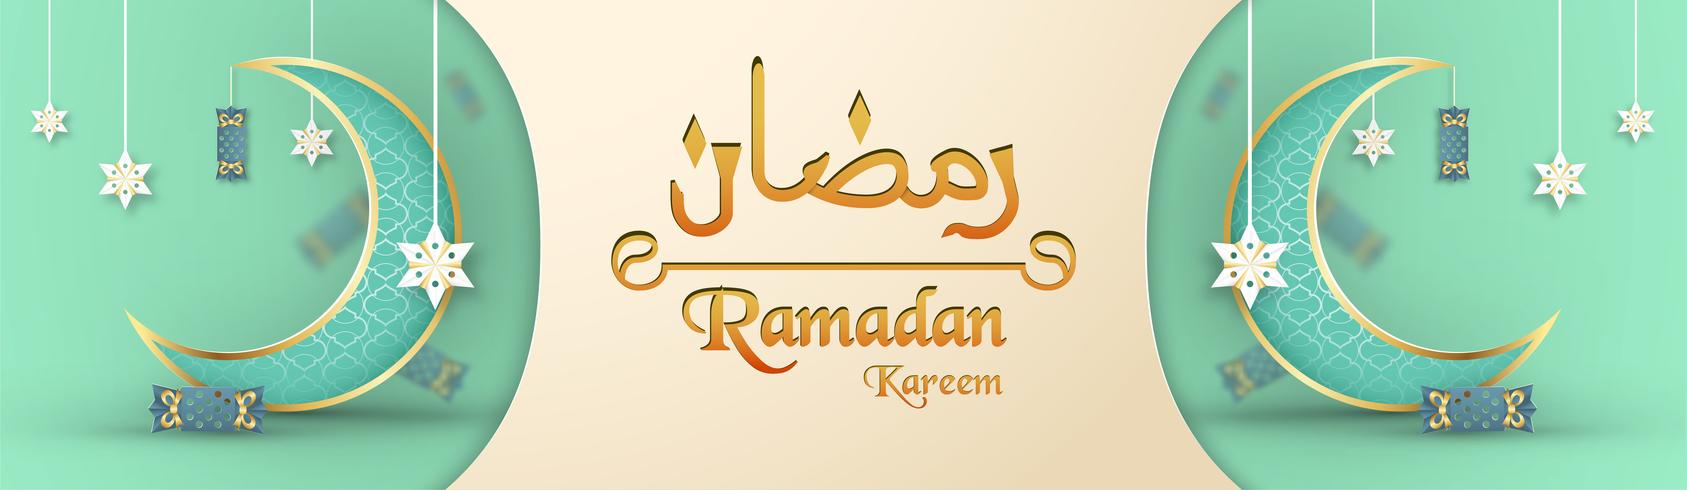 Vorlage für Ramadan Kareem mit grüner und goldener Farbe. Illustrationsdesign des Vektors 3D im Papierschnitt und Handwerk für islamische Grußkarte, Einladung, Bucheinband, Broschüre, Netzfahne, Anzeige. vektor